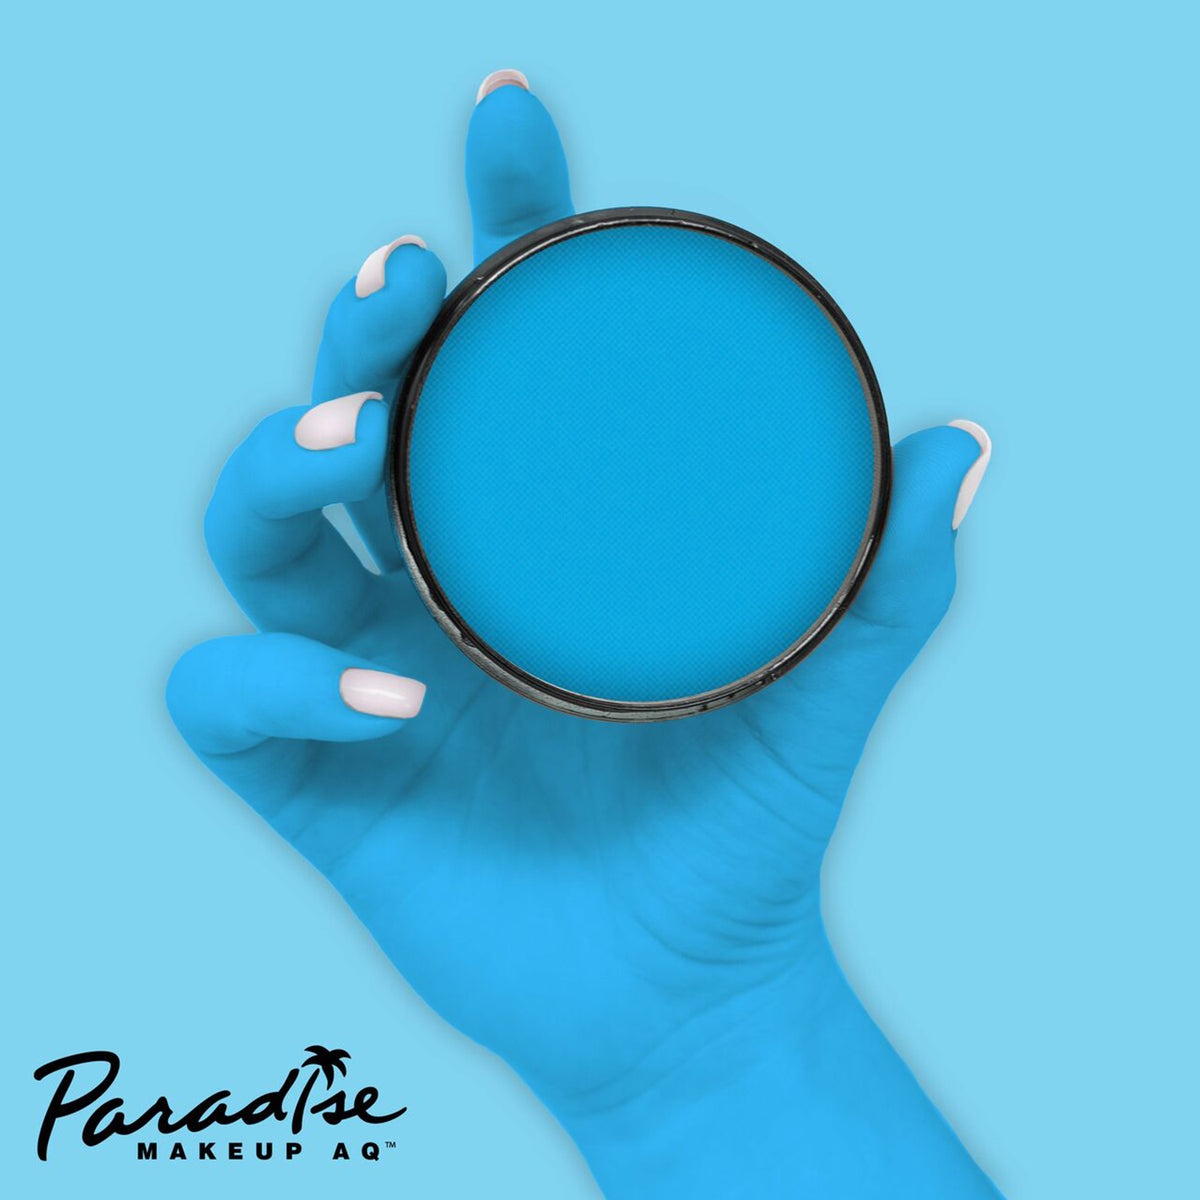 Paradise AQ Face Paint - Celestial/Neon Blue (1.4 oz/ 40 gm)